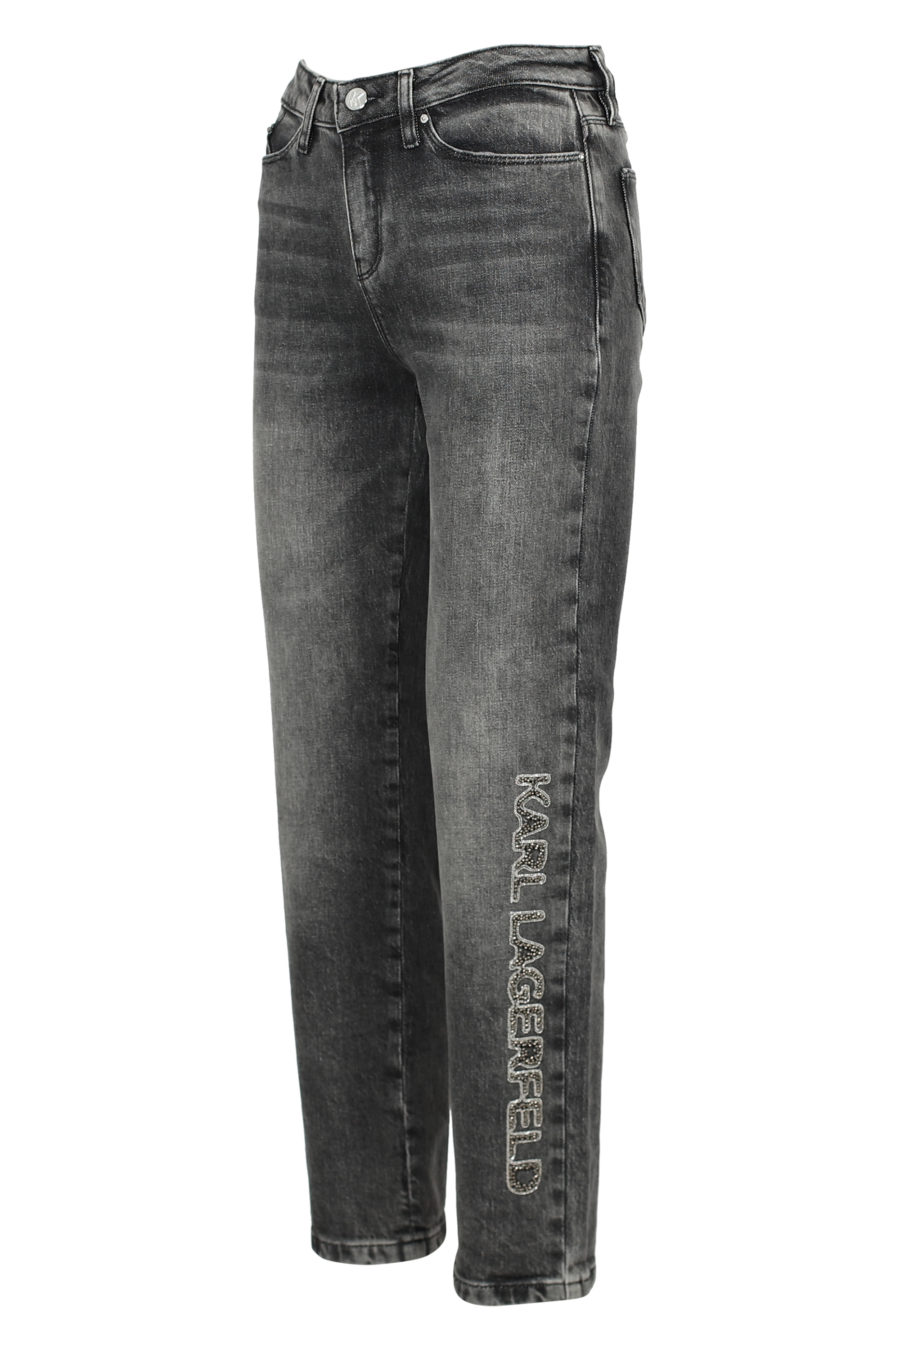 Pantalón tejano gris con logo abalorios - IMG 3157